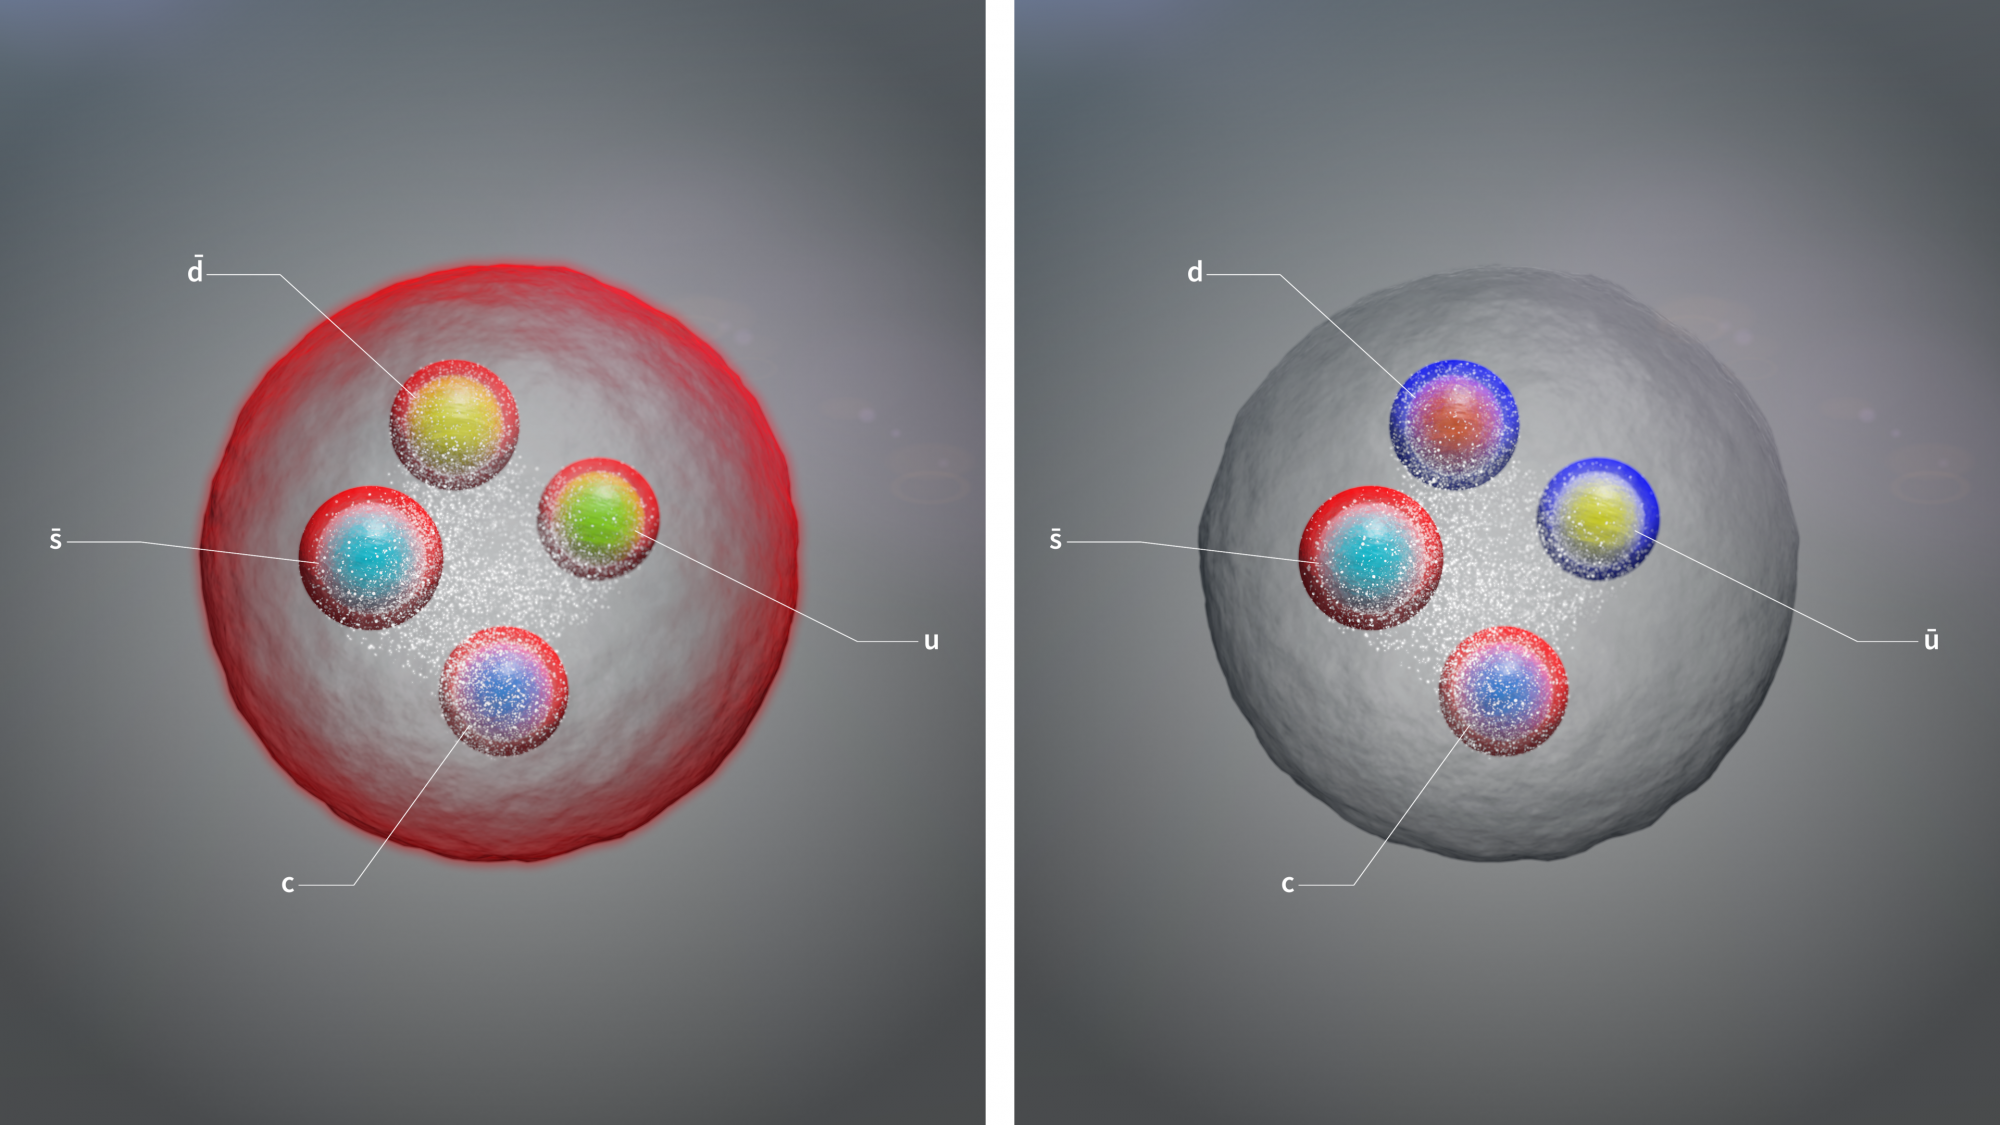 Felfedeztek három új egzotikus részecskét a CERN nagy hadronütköztetőjének kísérletében